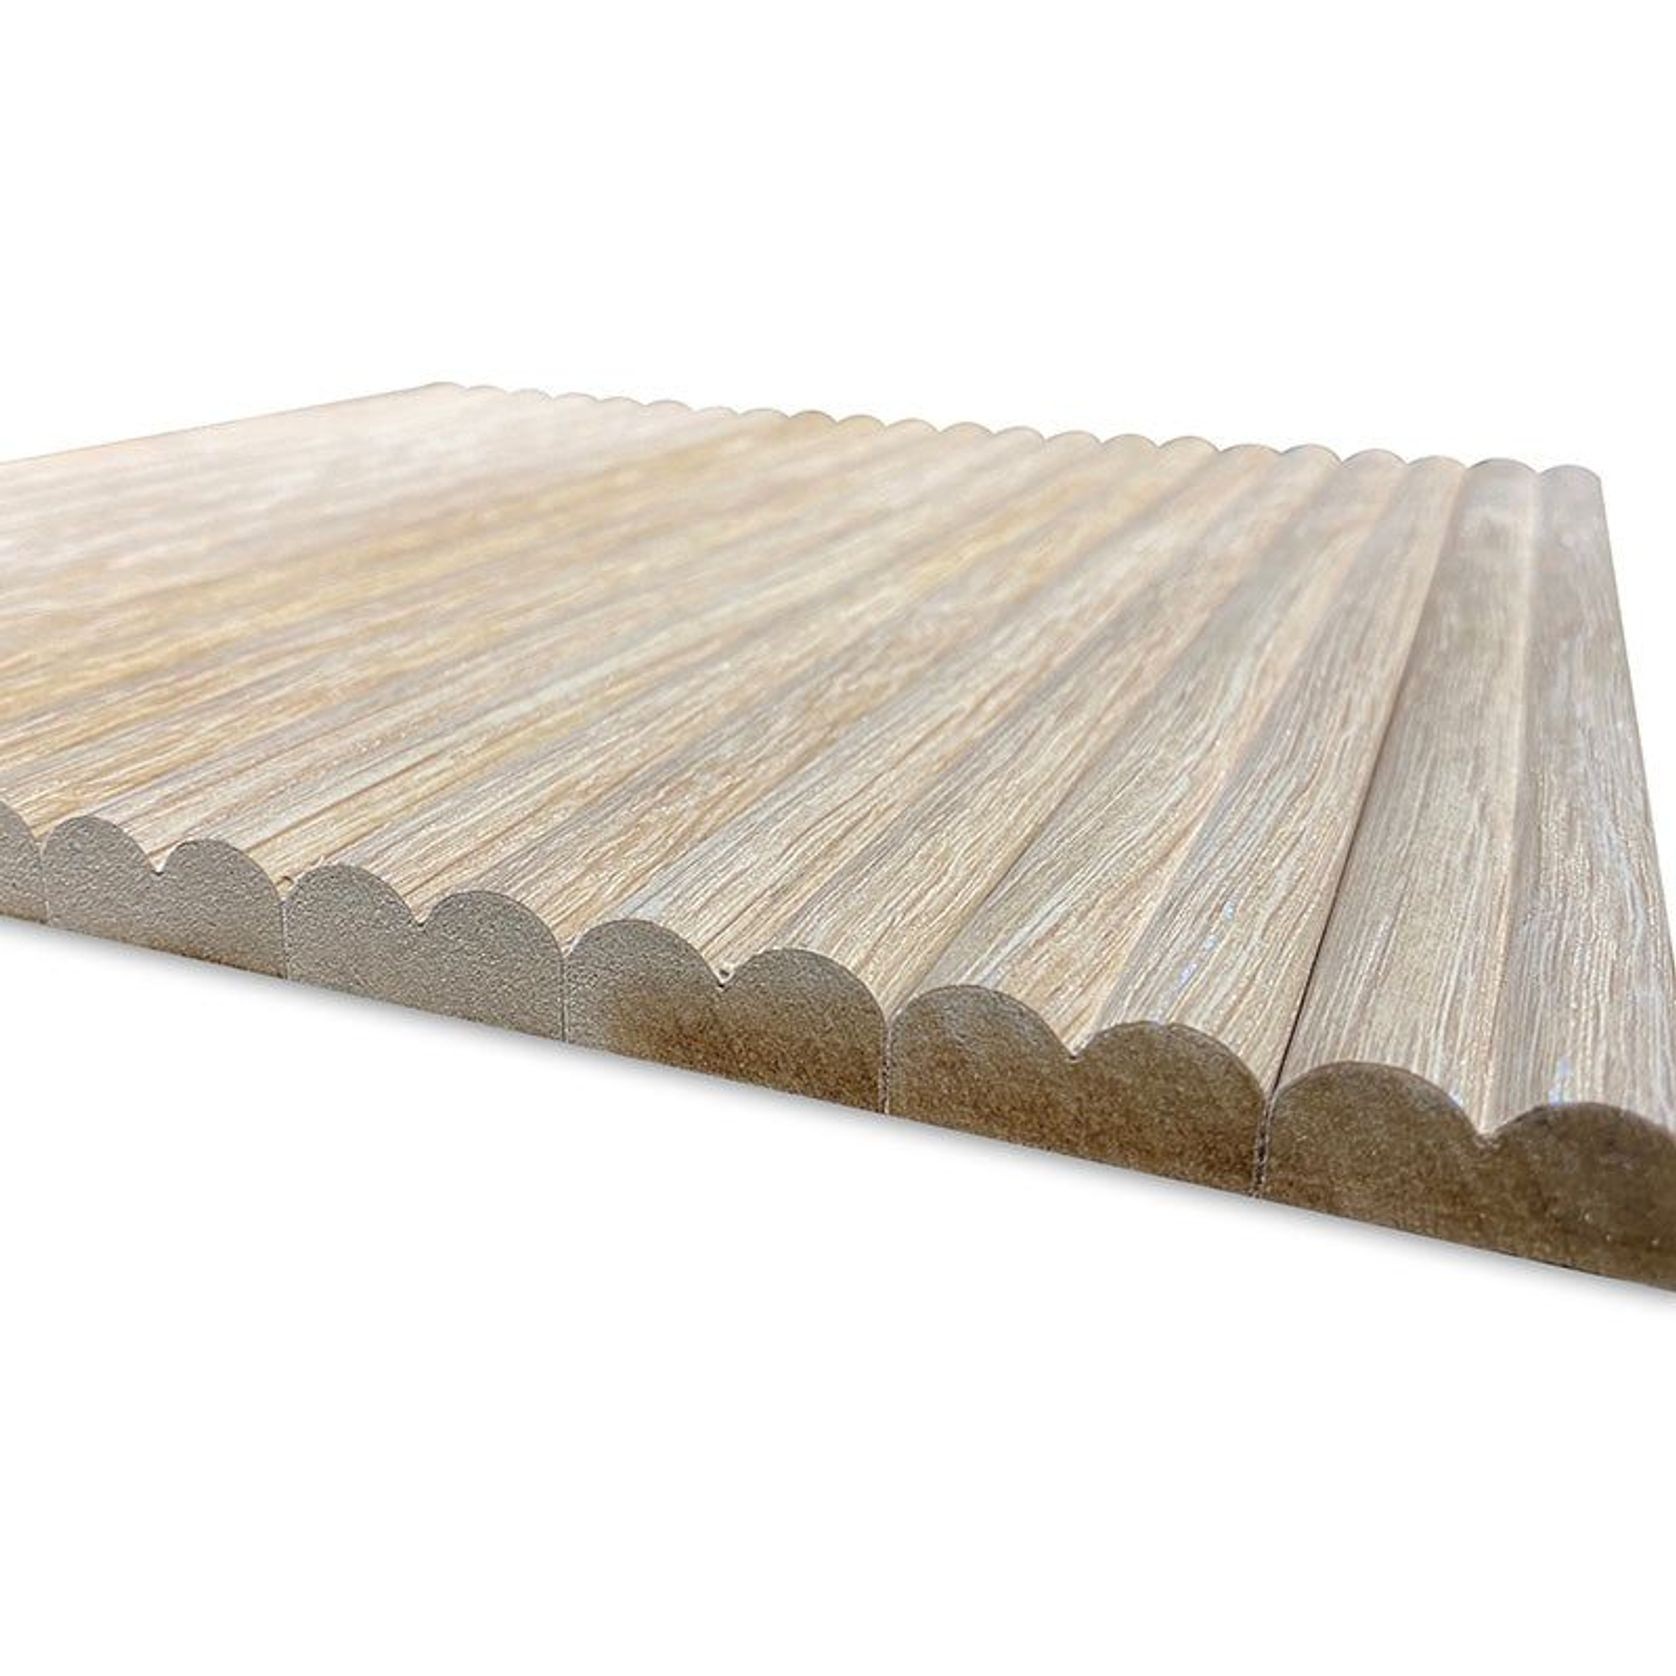 WOODFLEX Flexible Wooden Slat Wall Panel - Oak Veneer - 2700mm x 595mm - Slats gallery detail image